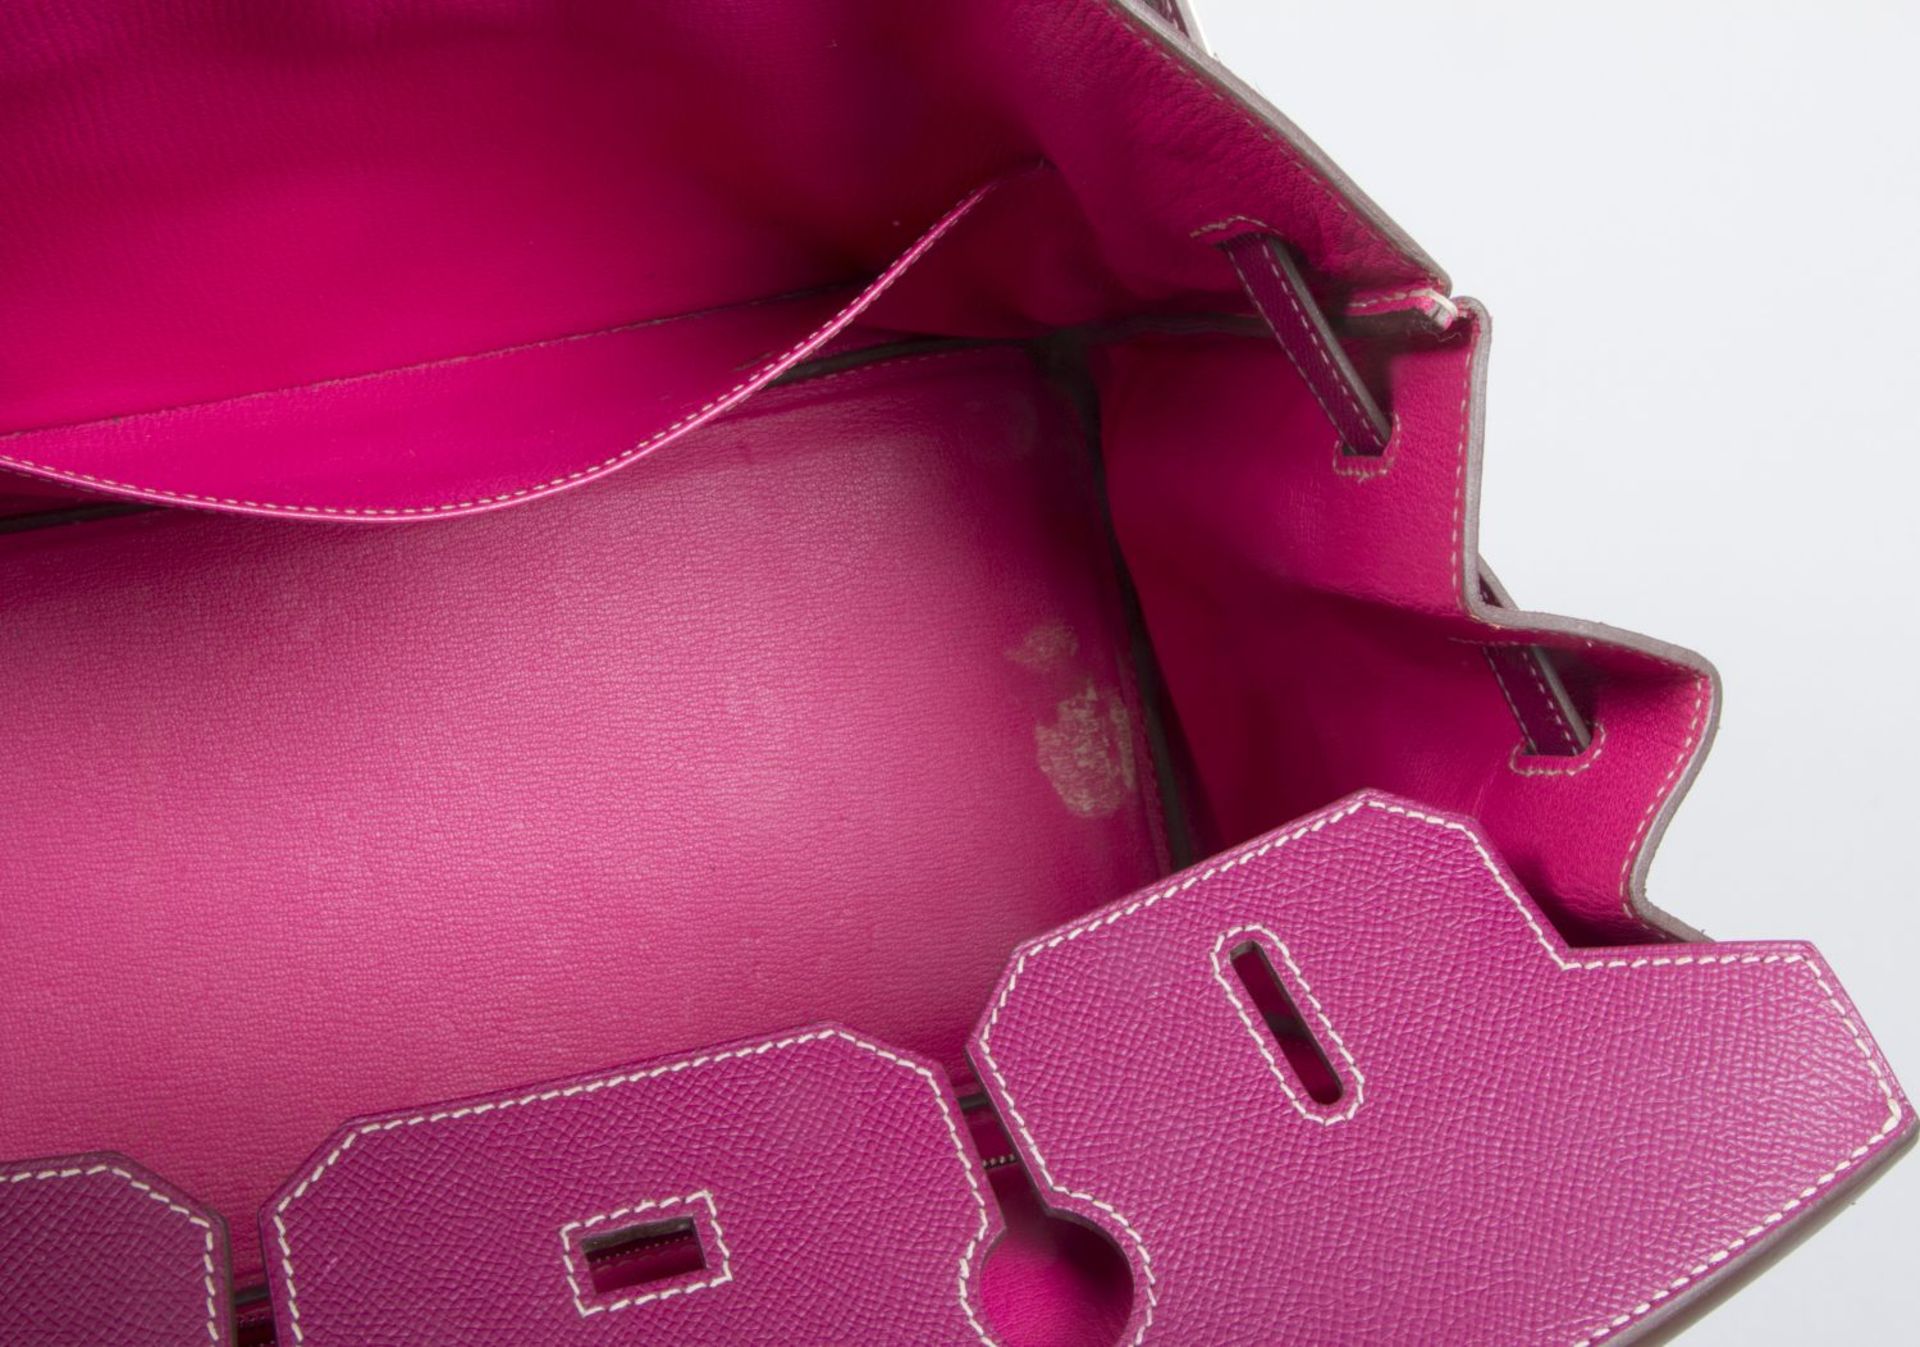 Hermès ''Birkin Bag 35'' Kalbsleder in Fuchsia mit weißer Naht. Beschläge mit Palladiumauflage. Trap - Bild 7 aus 10